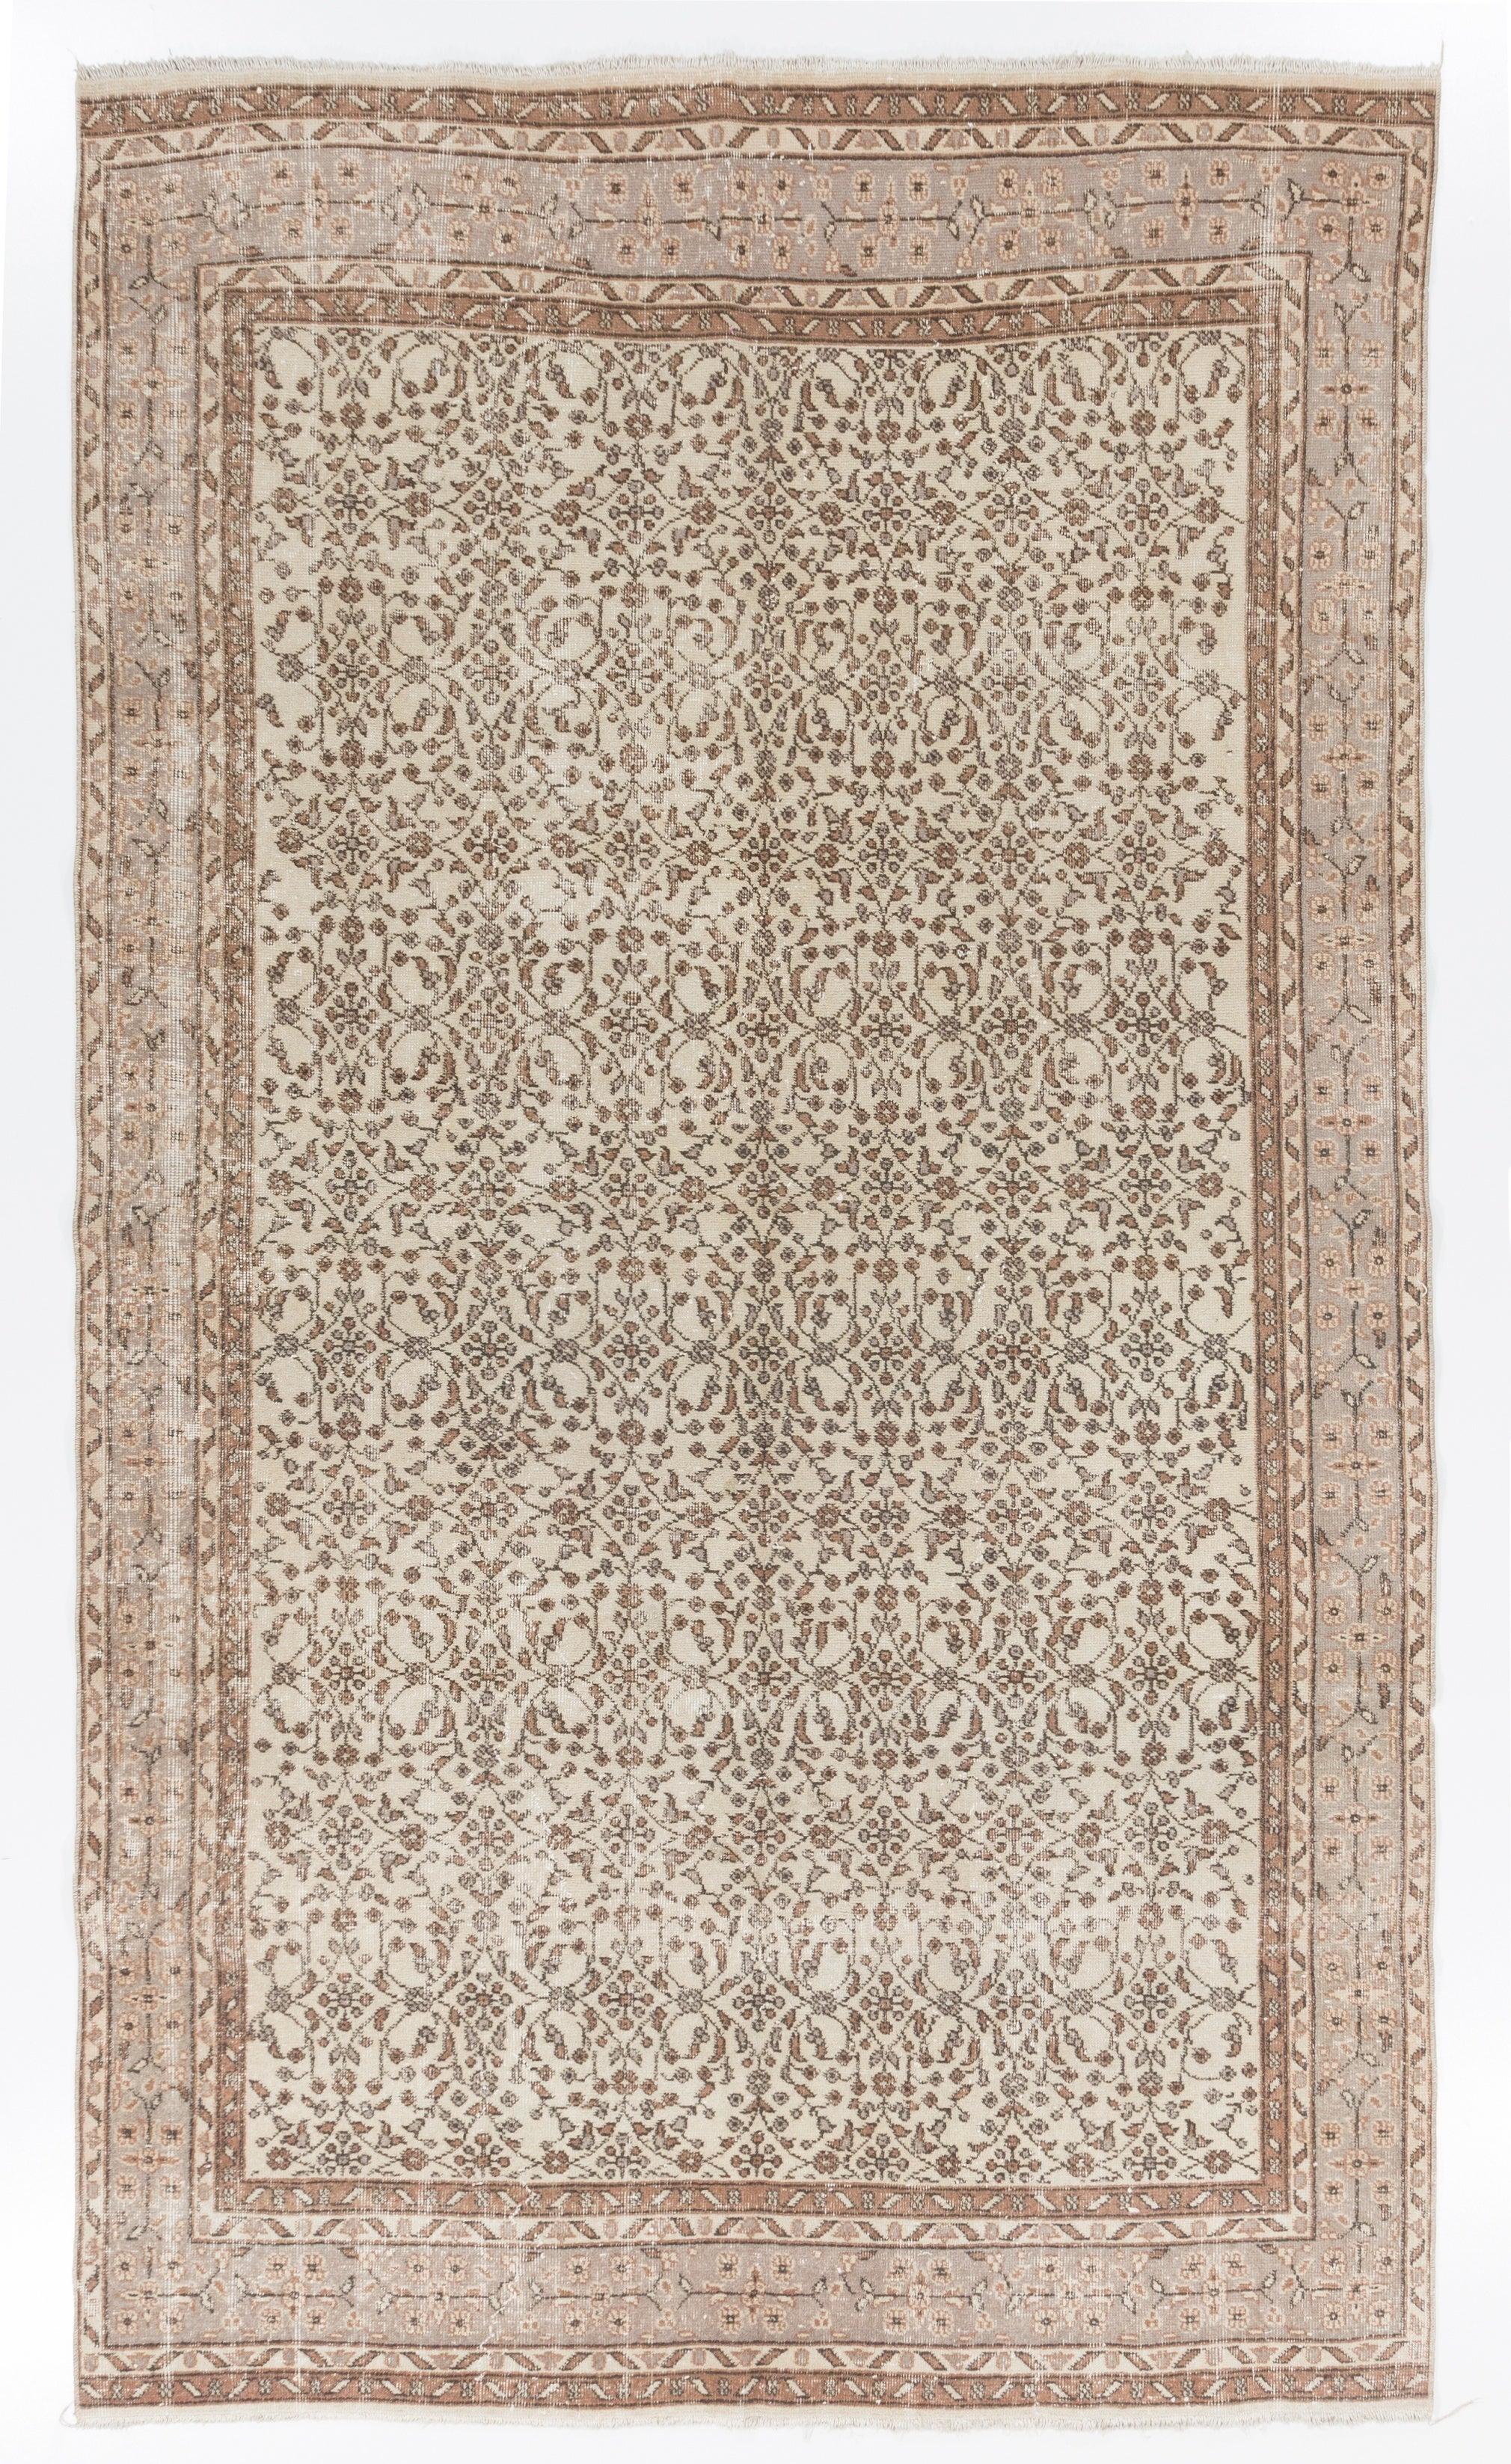 6x10.5 Ft Vintage Handmade Turkish Oushak Rug, Beige Carpet with Floral Design